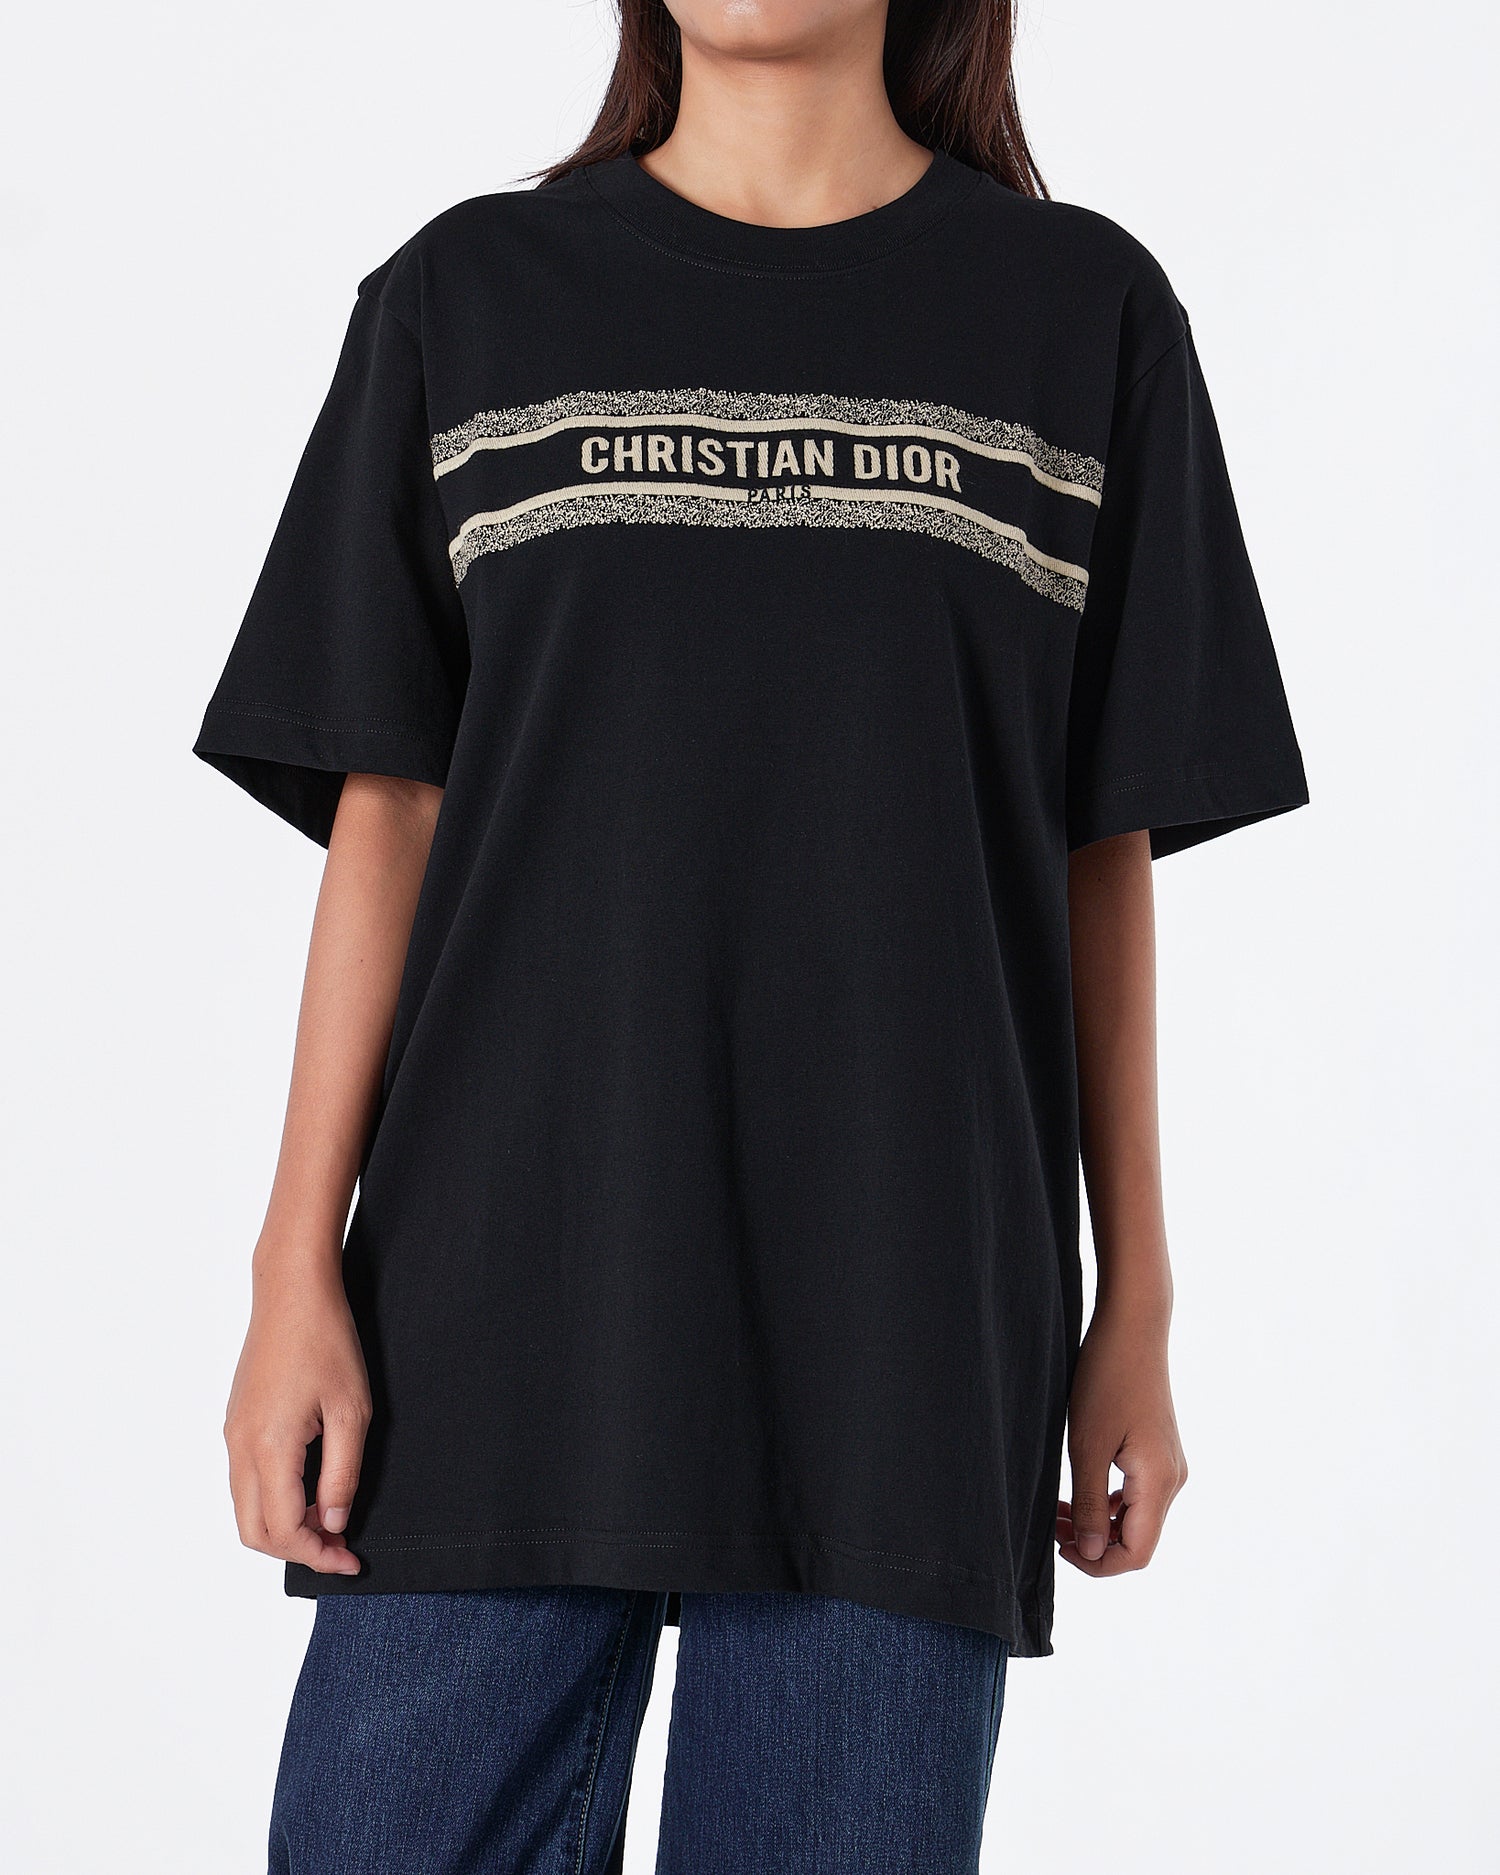 CD Designer Unisex Black Knit T-Shirt 59.90